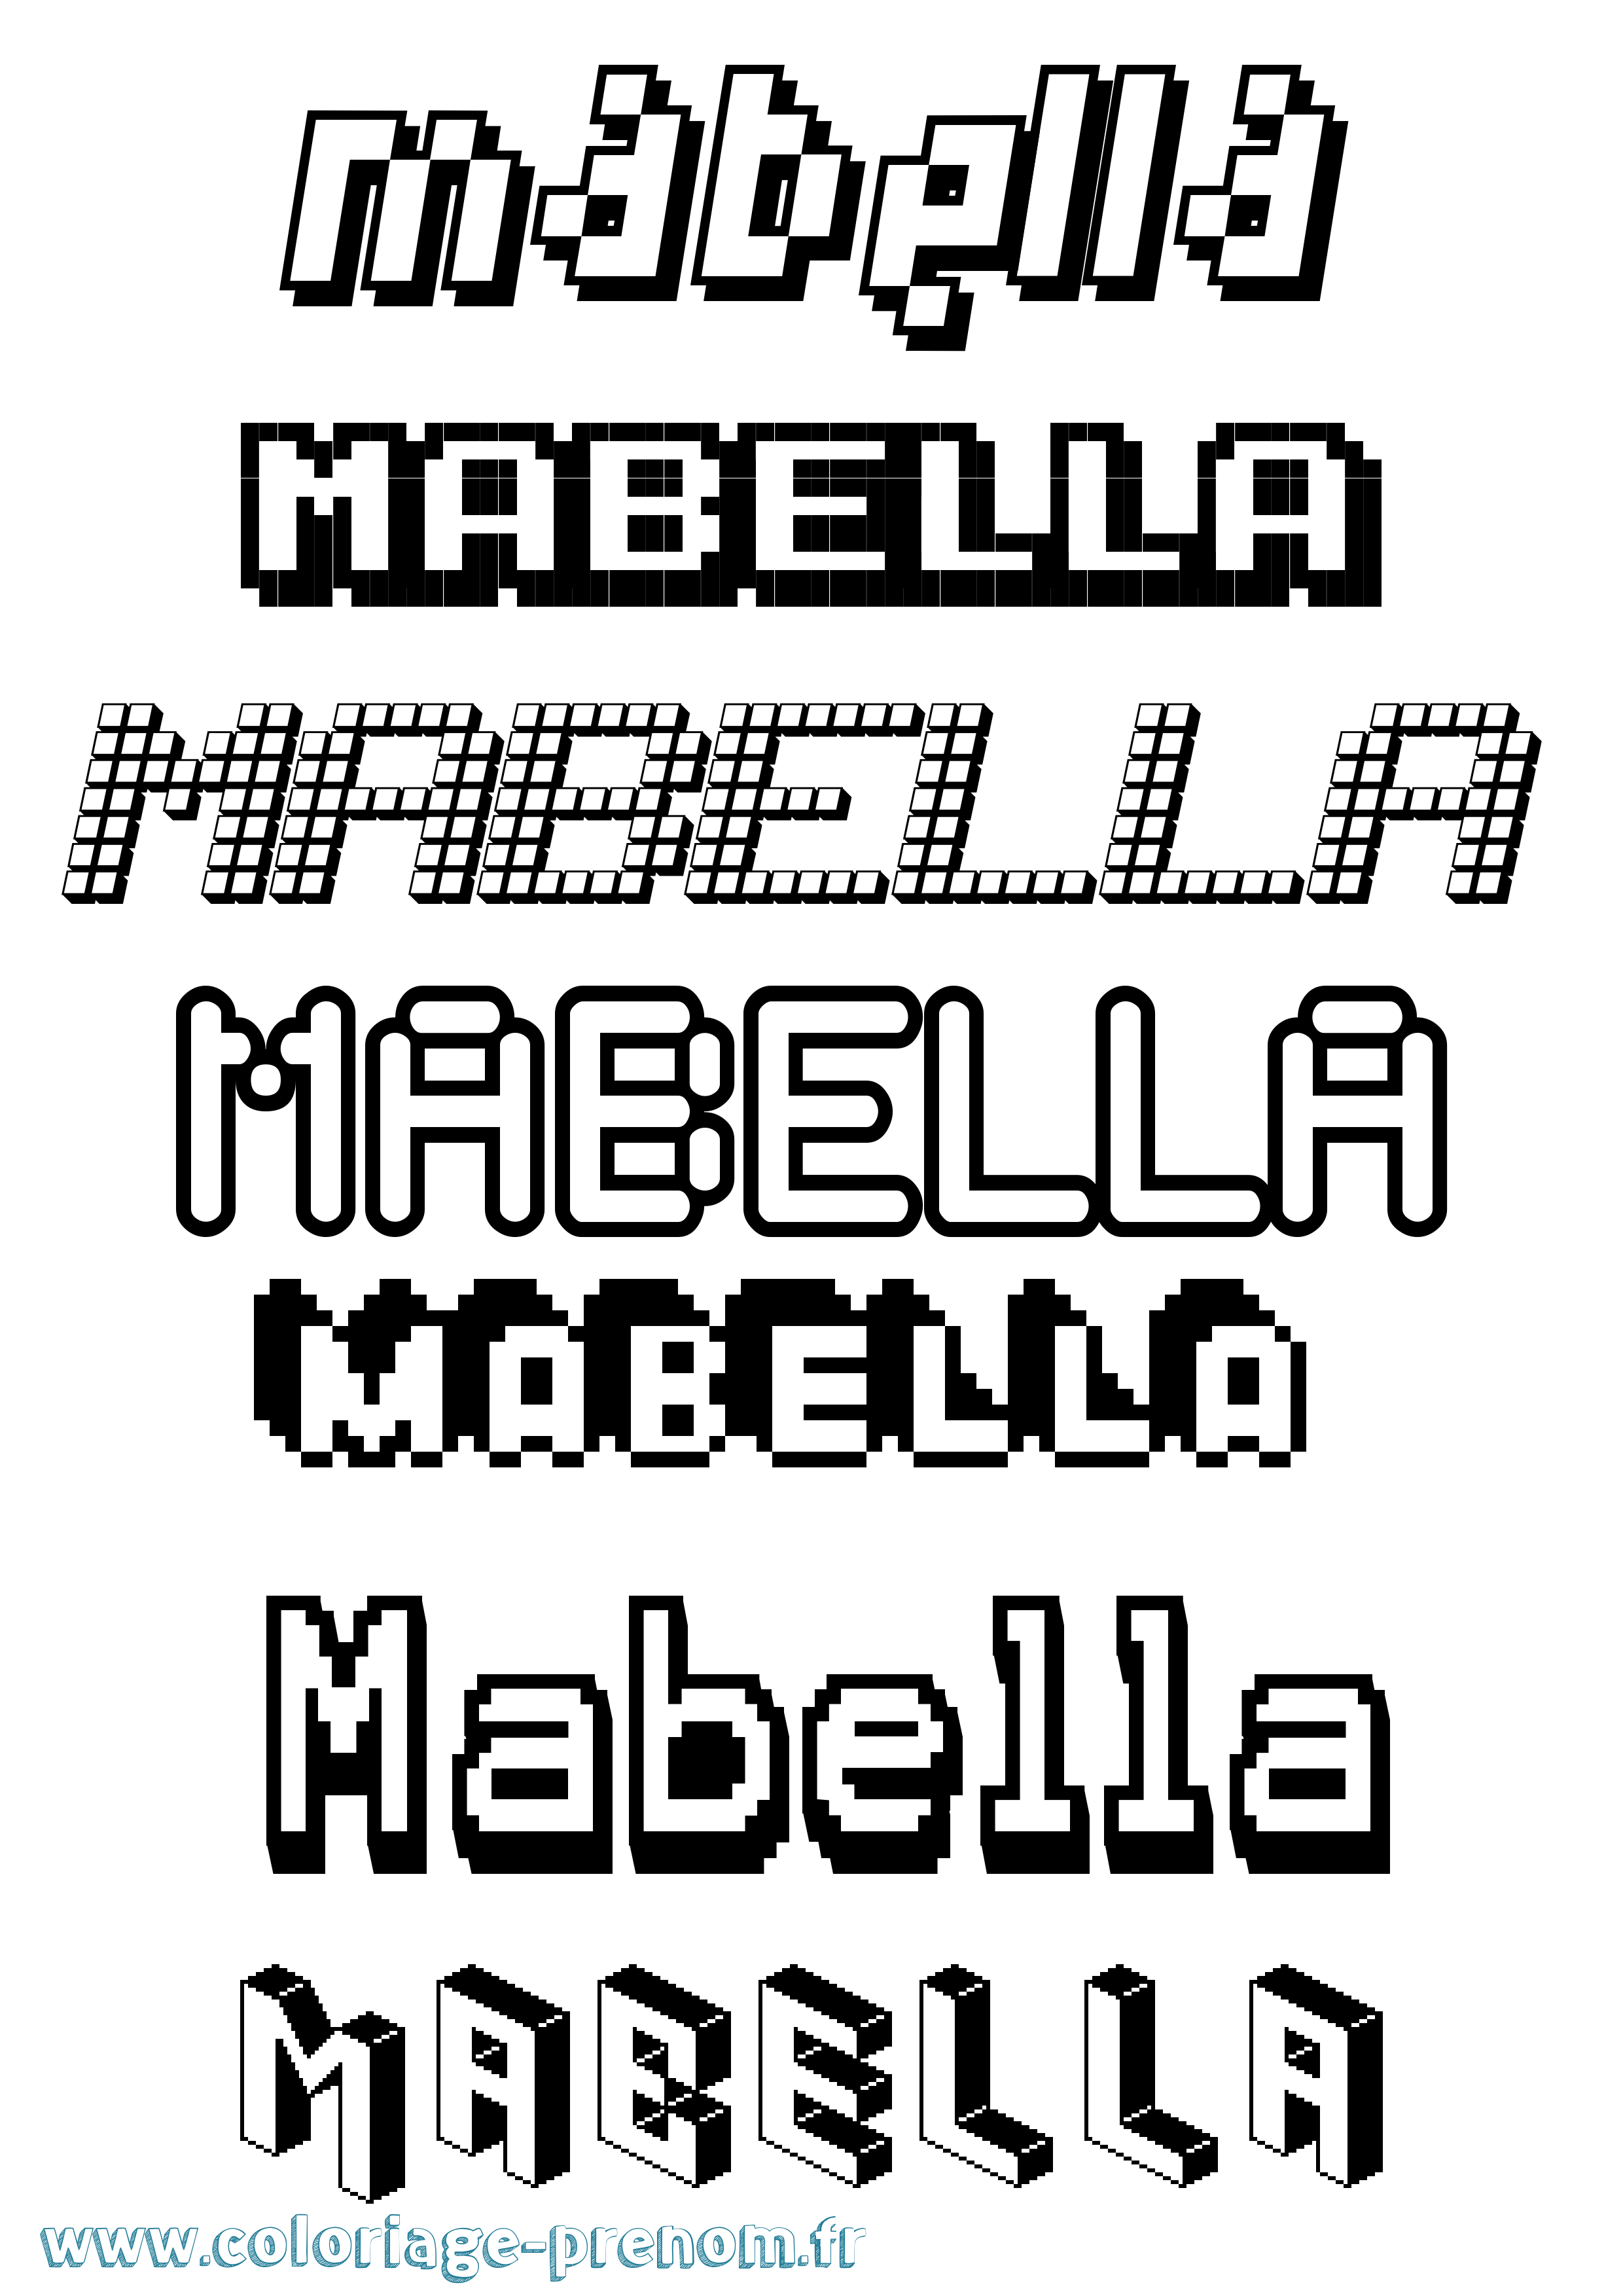 Coloriage prénom Mabella Pixel